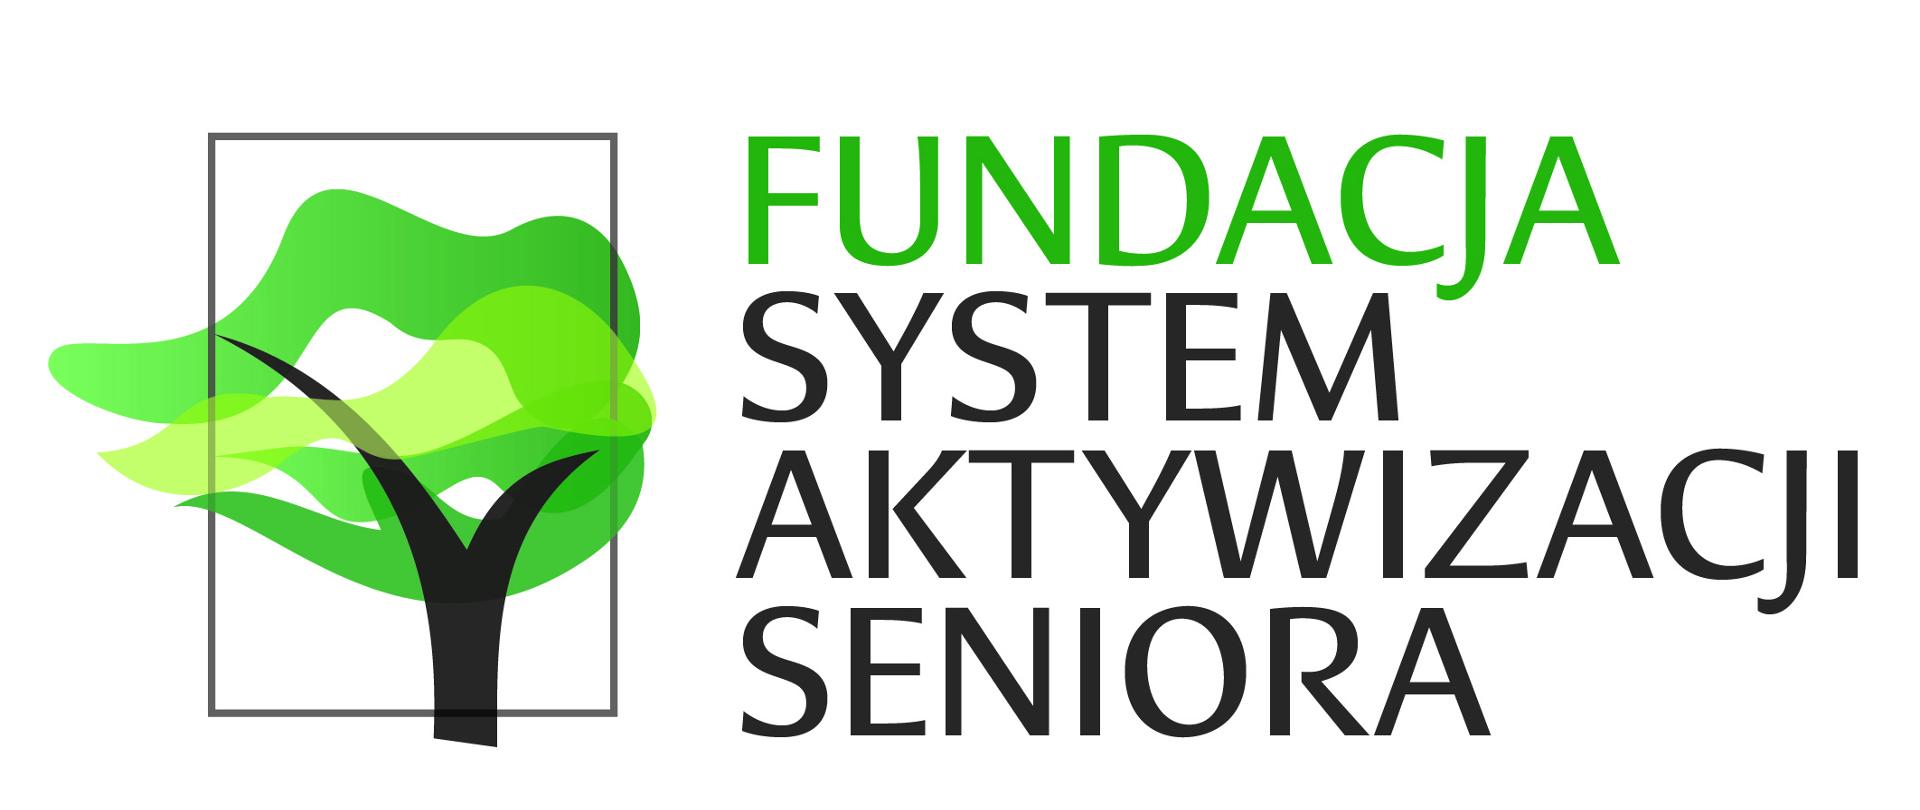 Fundacja System Aktywizacji Seniora - logotyp